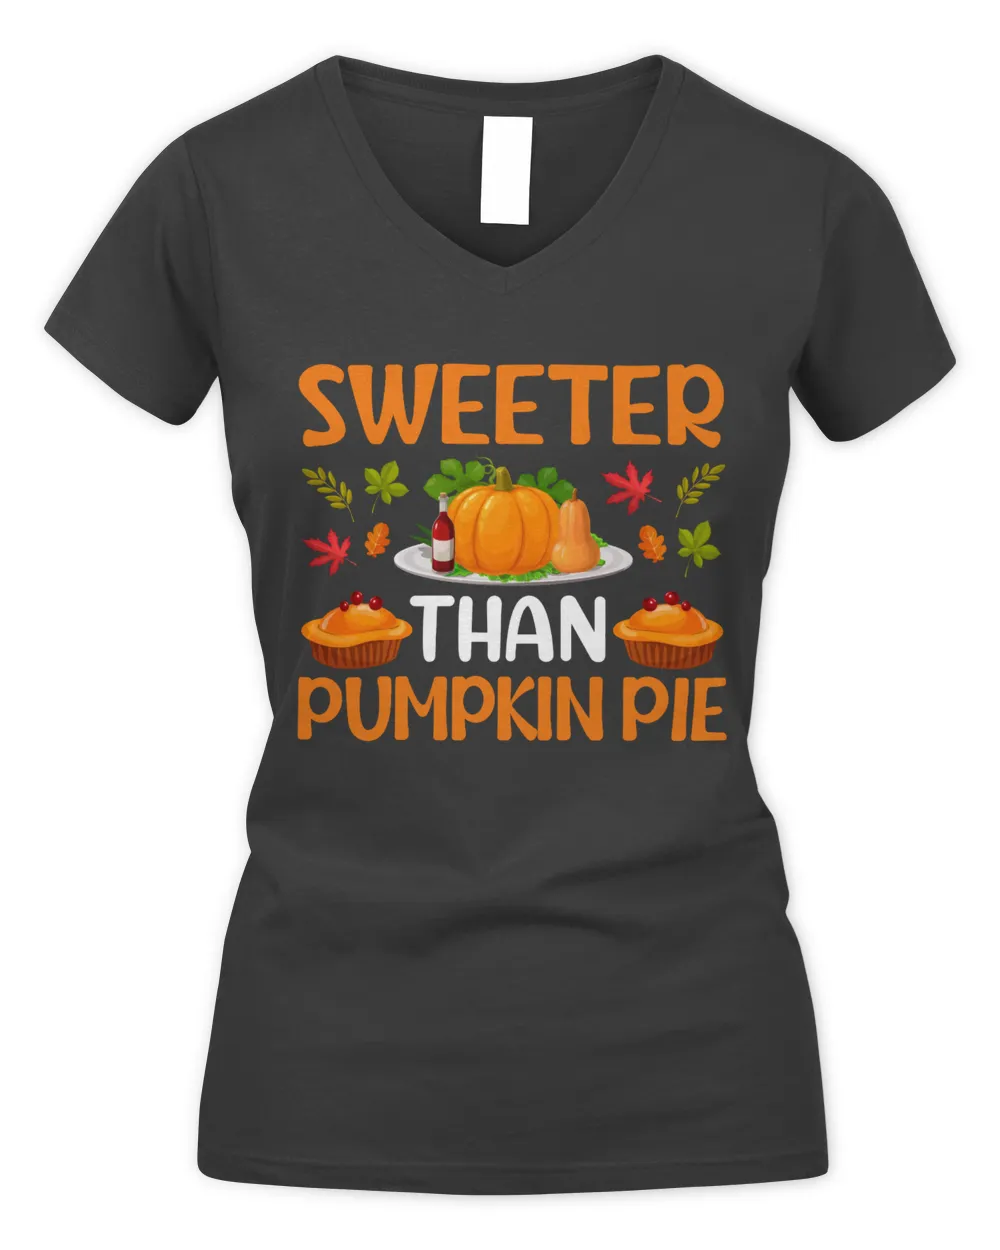 Sweeter than pumpkin pie